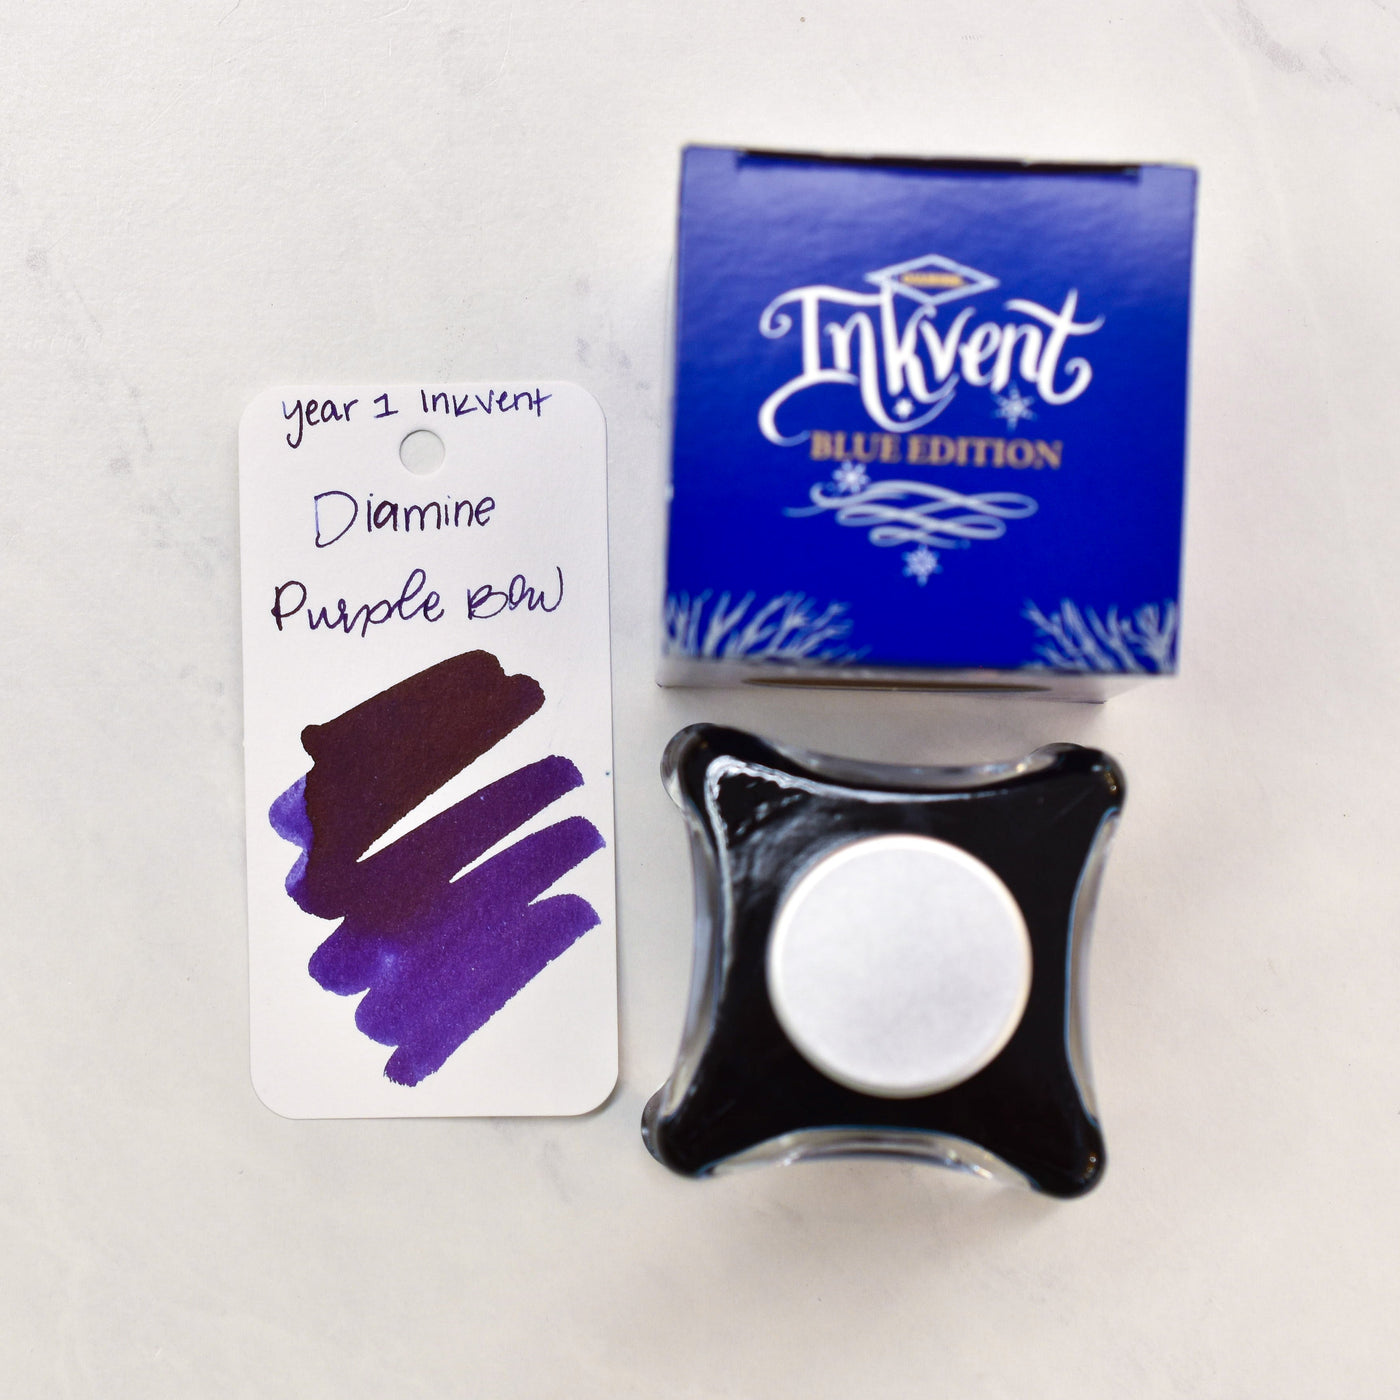 Diamine Purple Sheening Ink